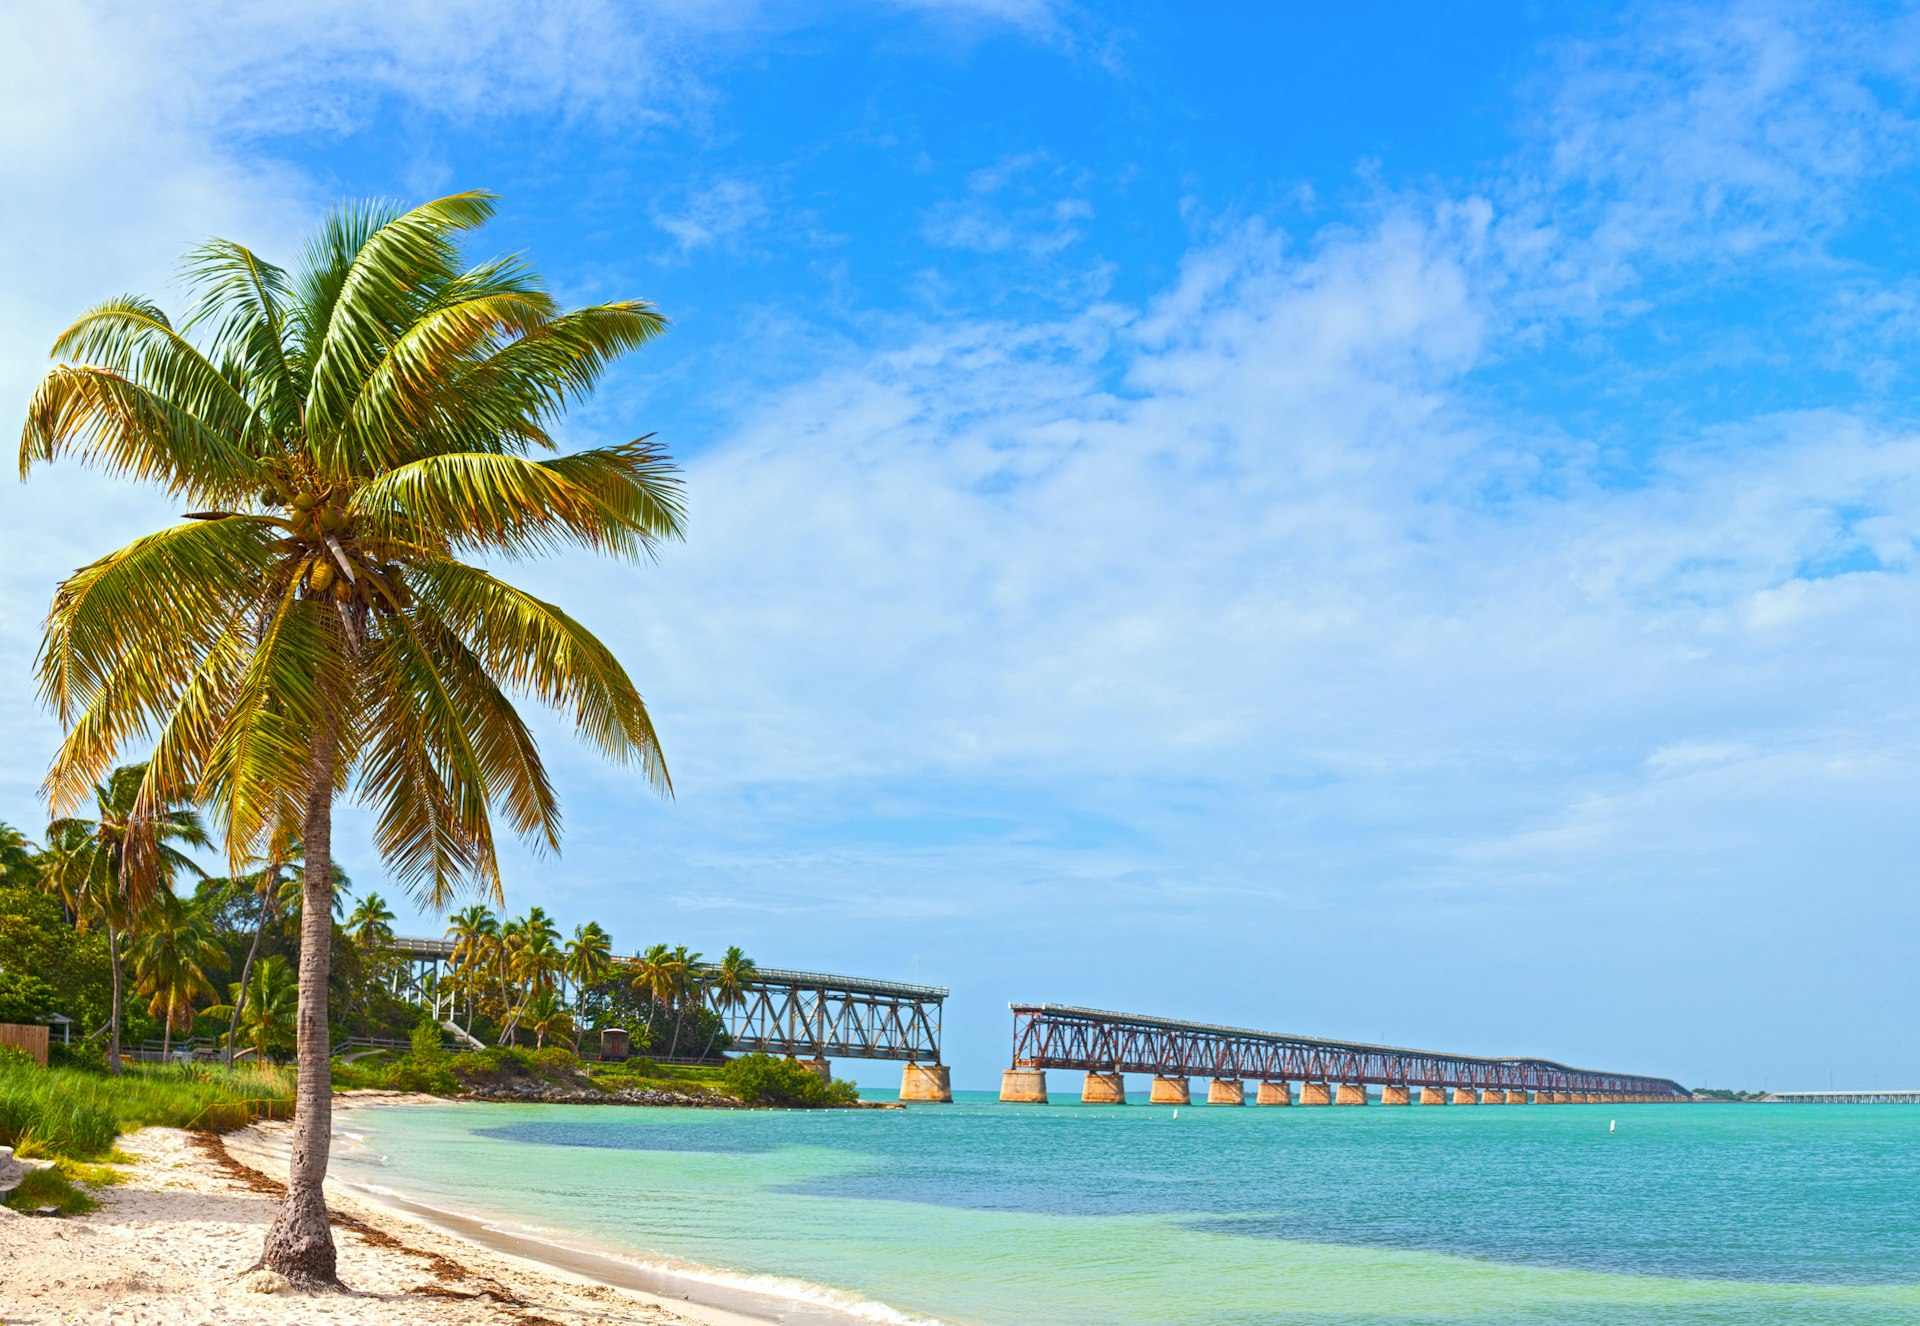 Bahia Honda state park, landmark Flagler bridge on a summer day in the Florida Keys 